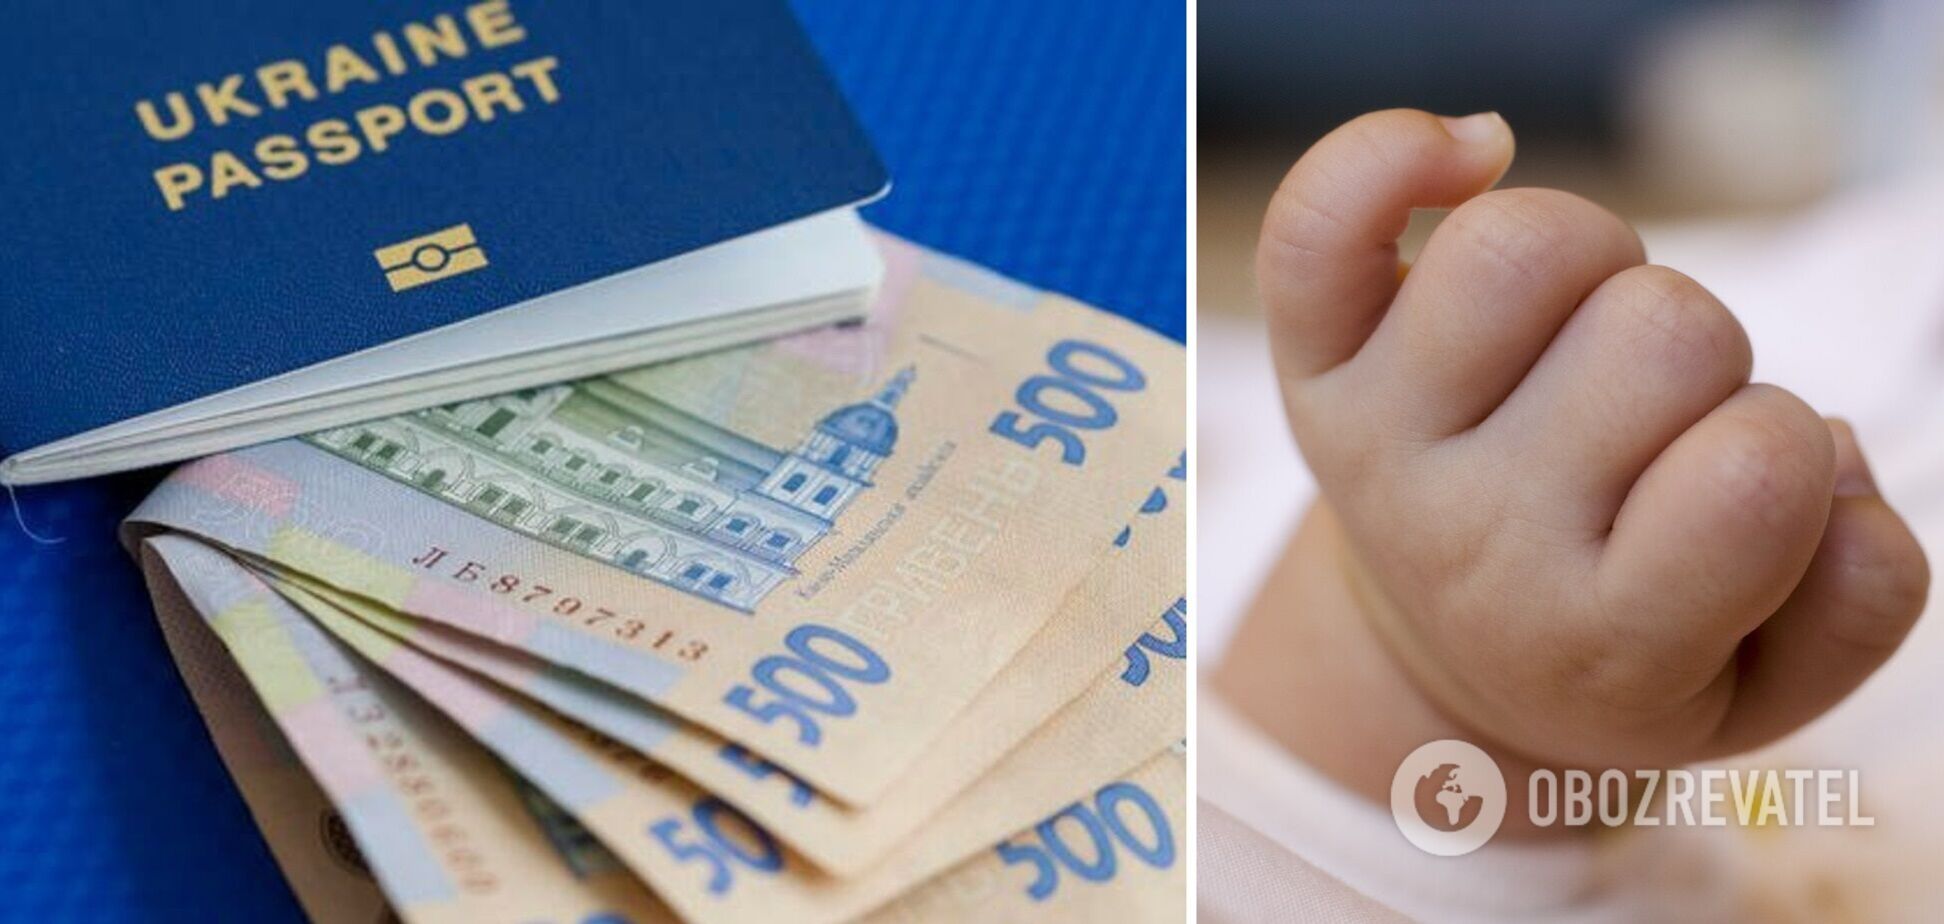 Народжені у 2019 році отримають понад 600 тис. грн на 'економічний паспорт'